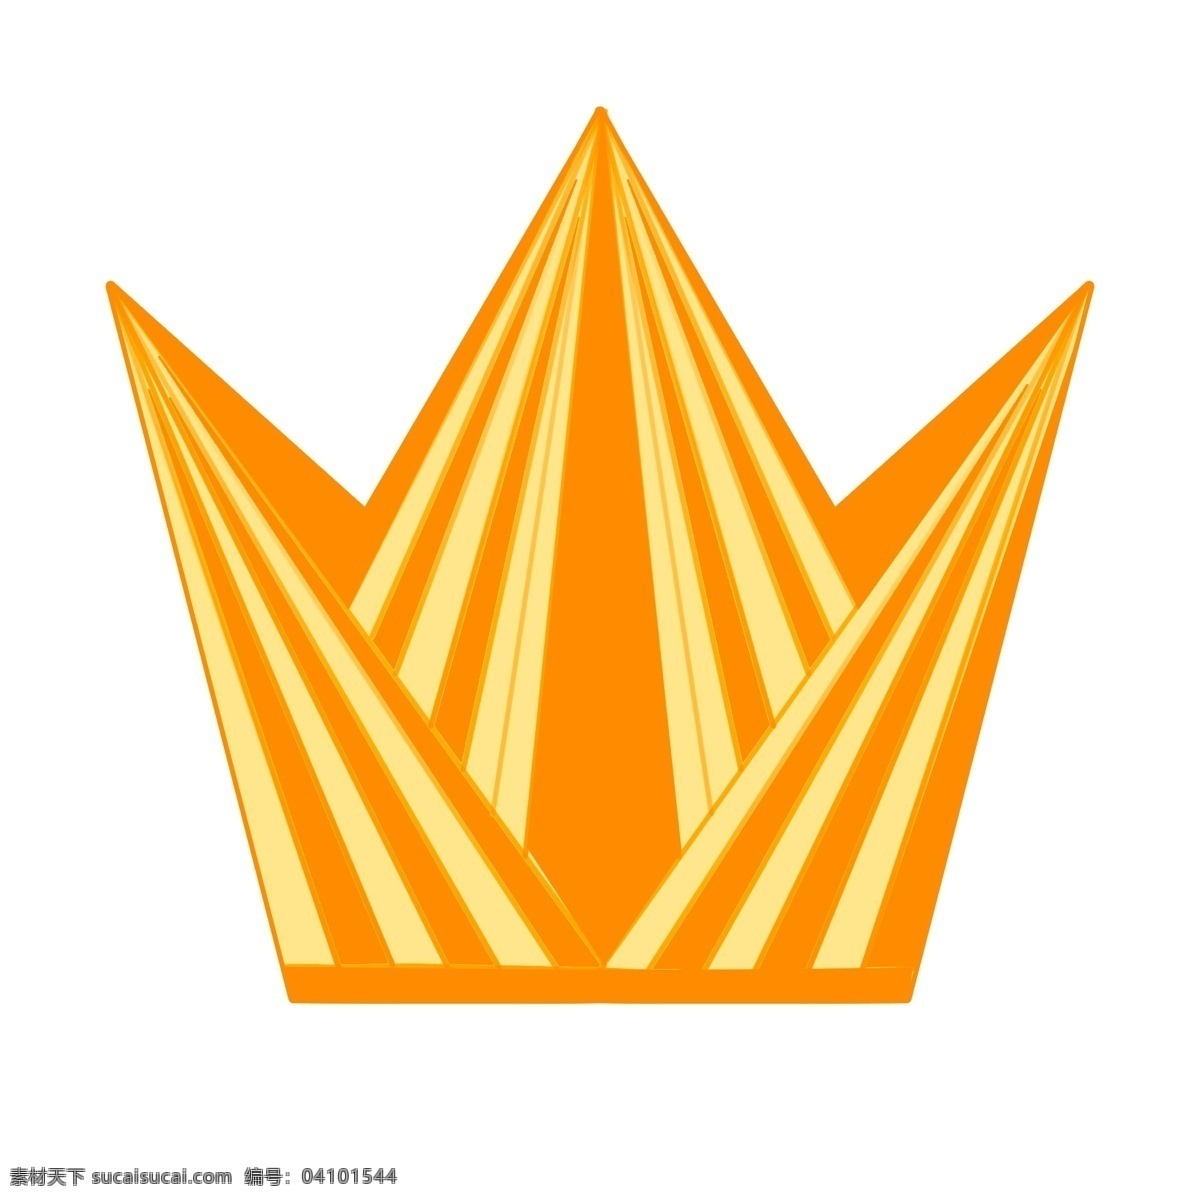 皇冠 手绘 王冠 三角 图形 金色 异域 风情 华丽 金色皇冠 金子 金属材质 王国 高贵 皇家 帽子 国王 king